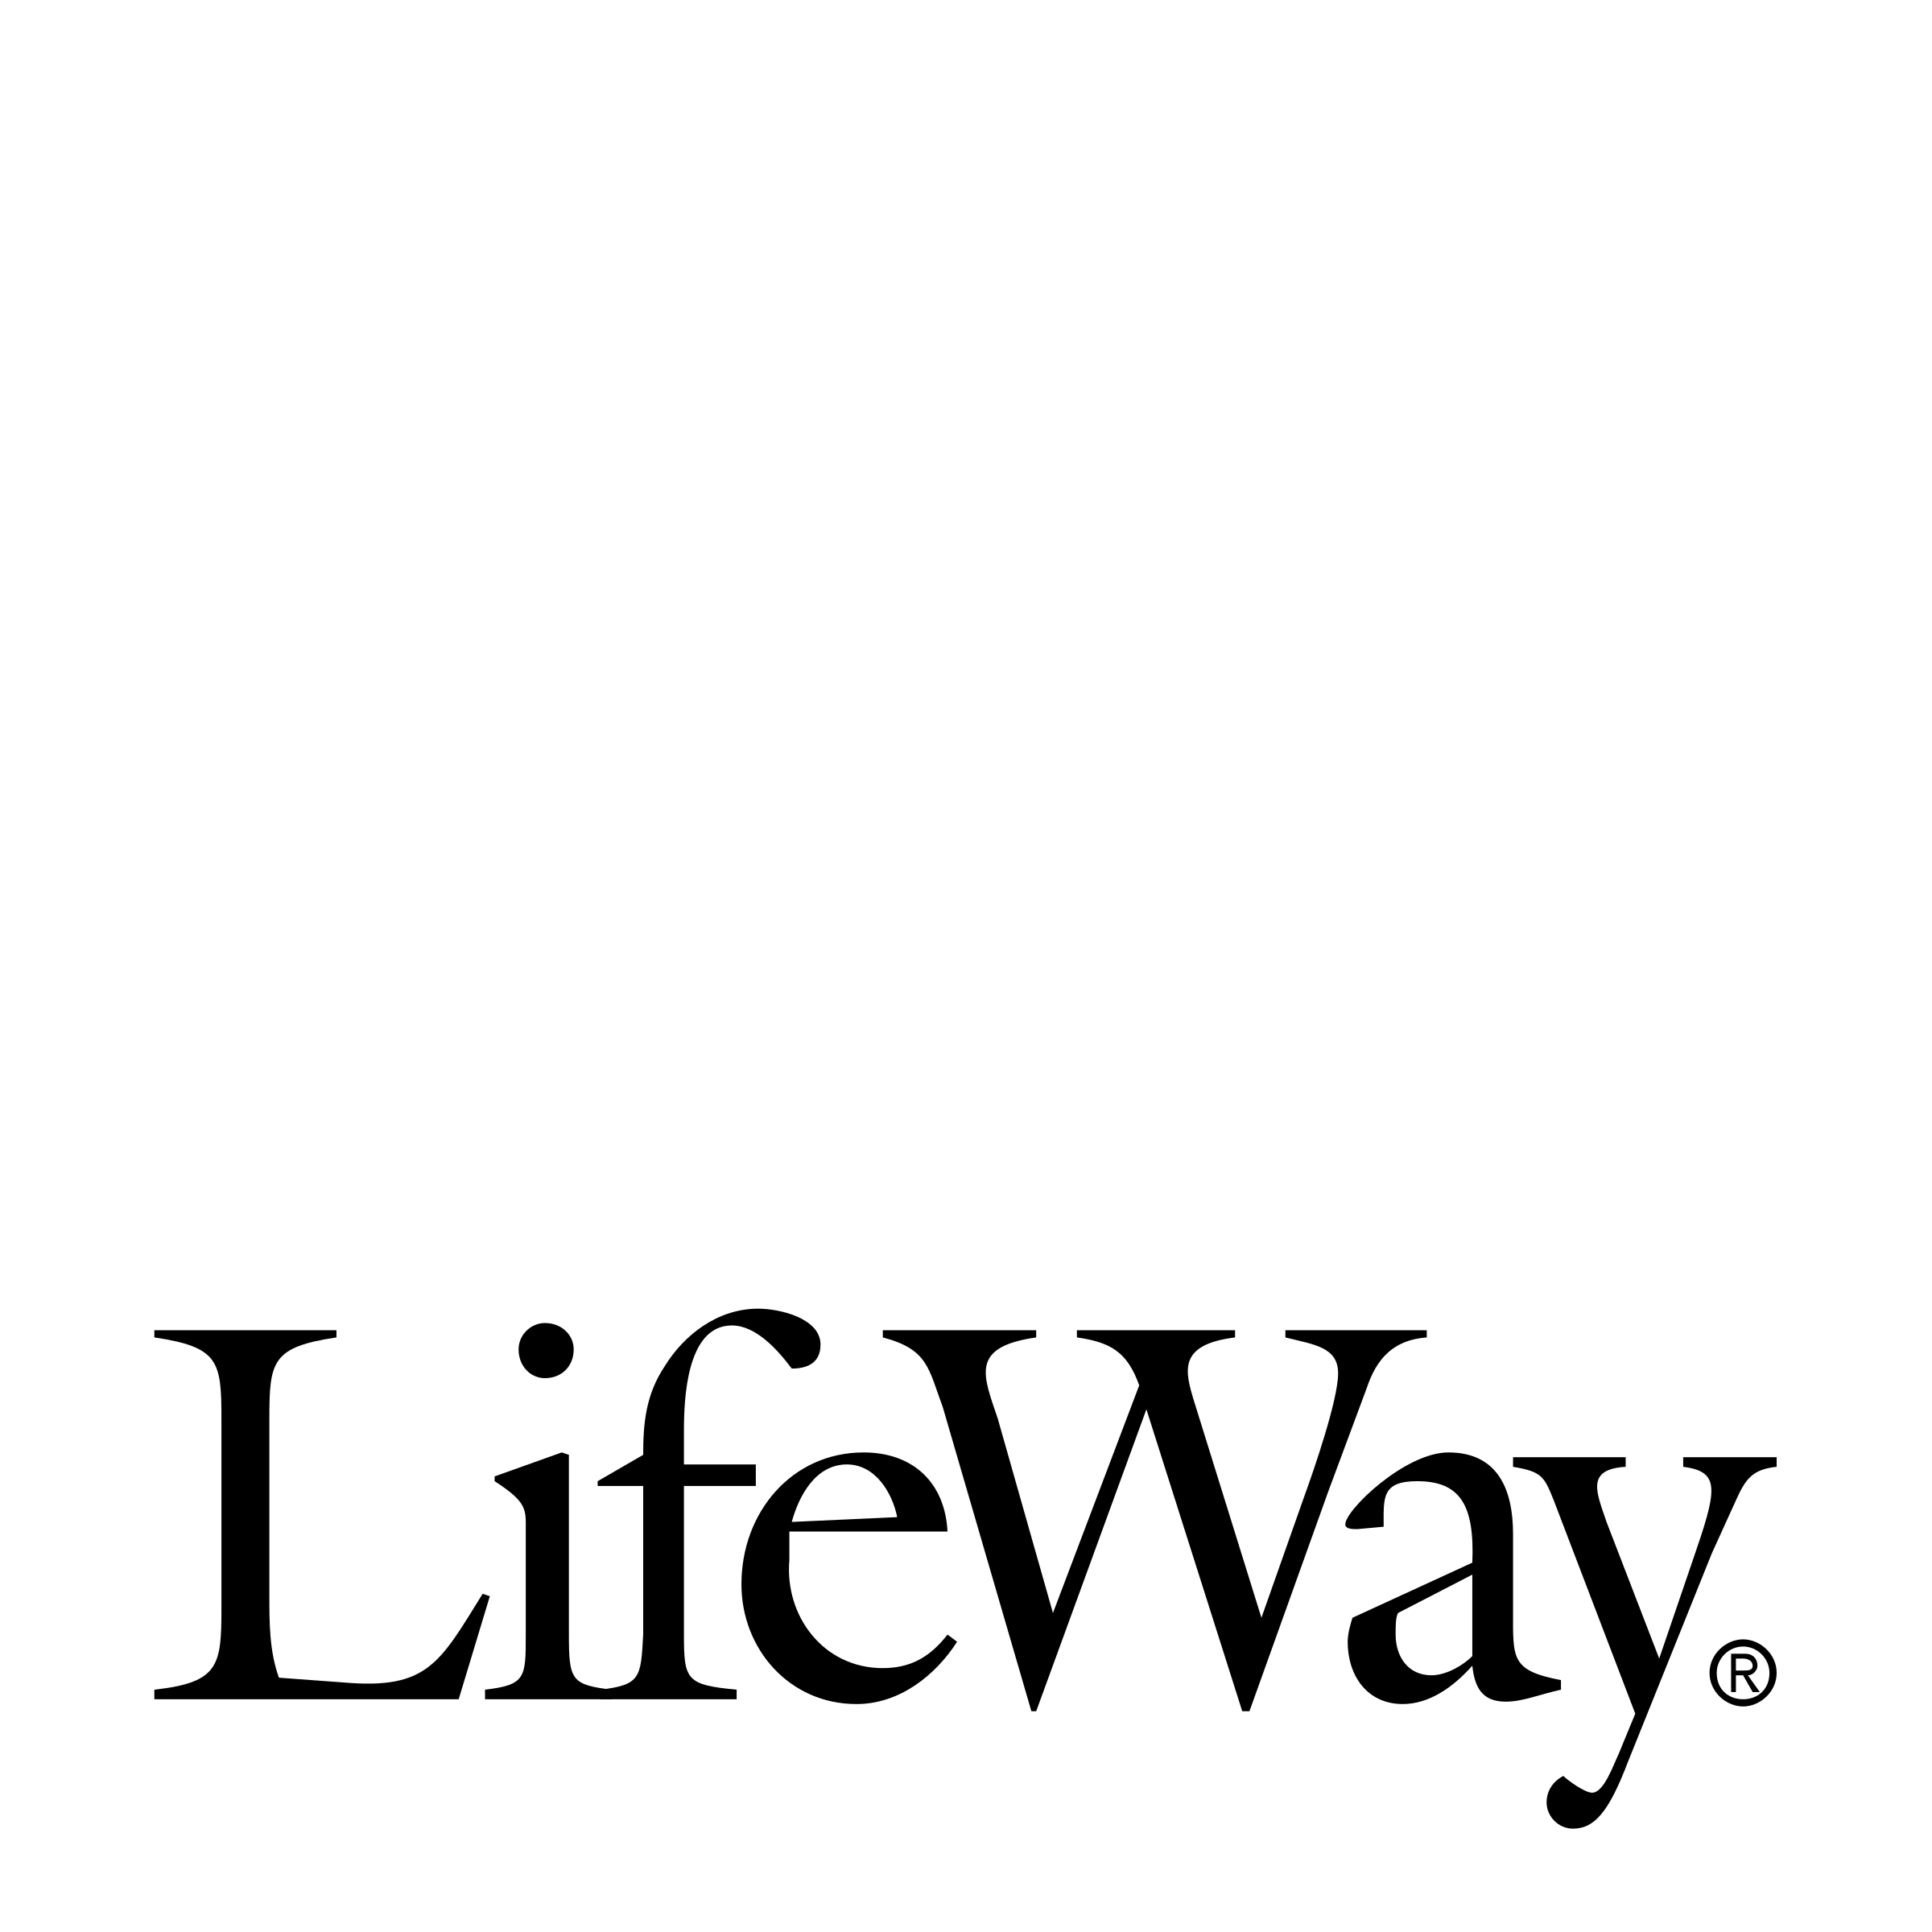 LifeWay Logo - LifeWay Logo PNG Transparent & SVG Vector